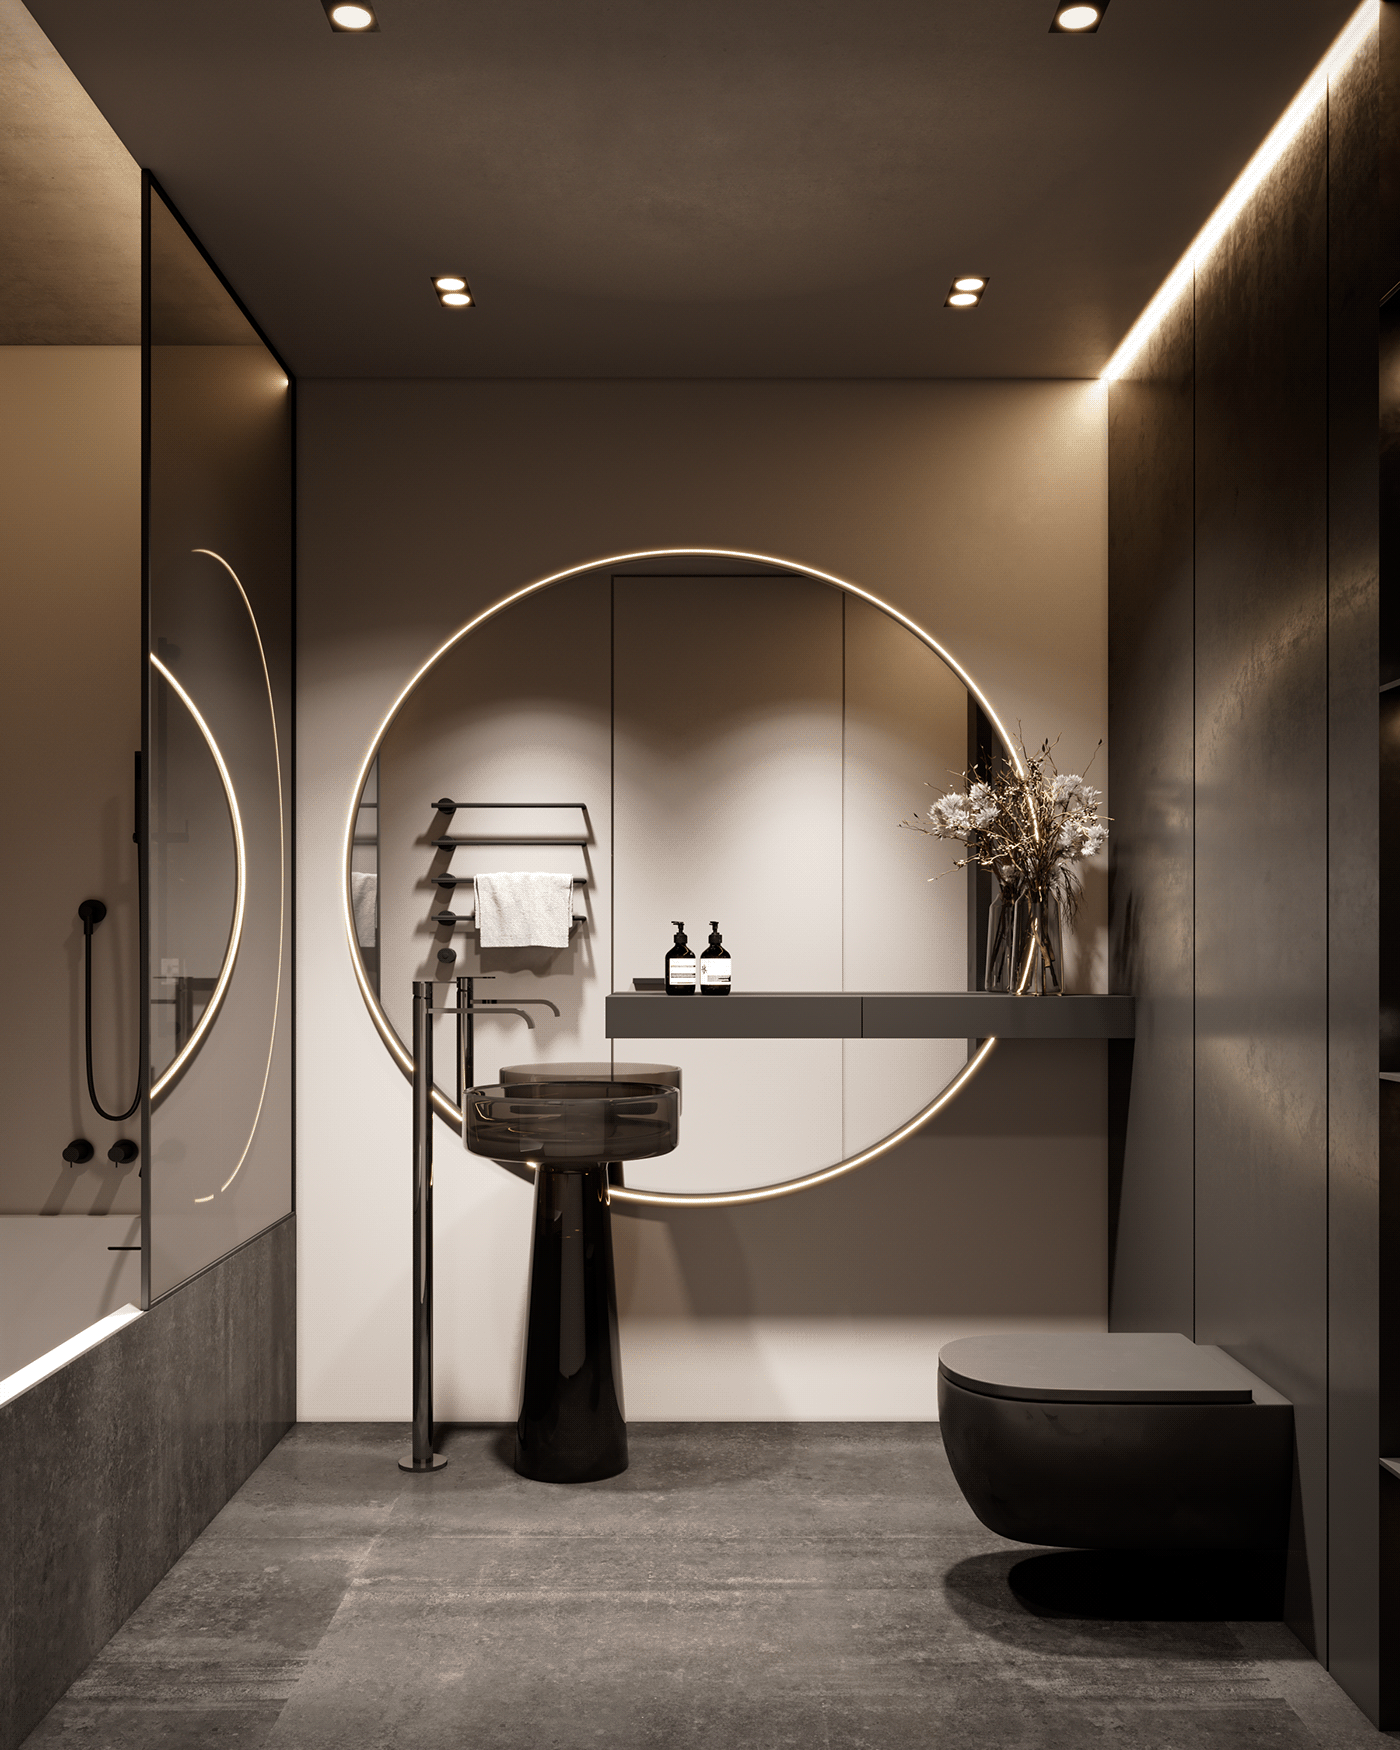 3D 3dsmax apartment architecture CG designm interiordesign interiors Renders visualization